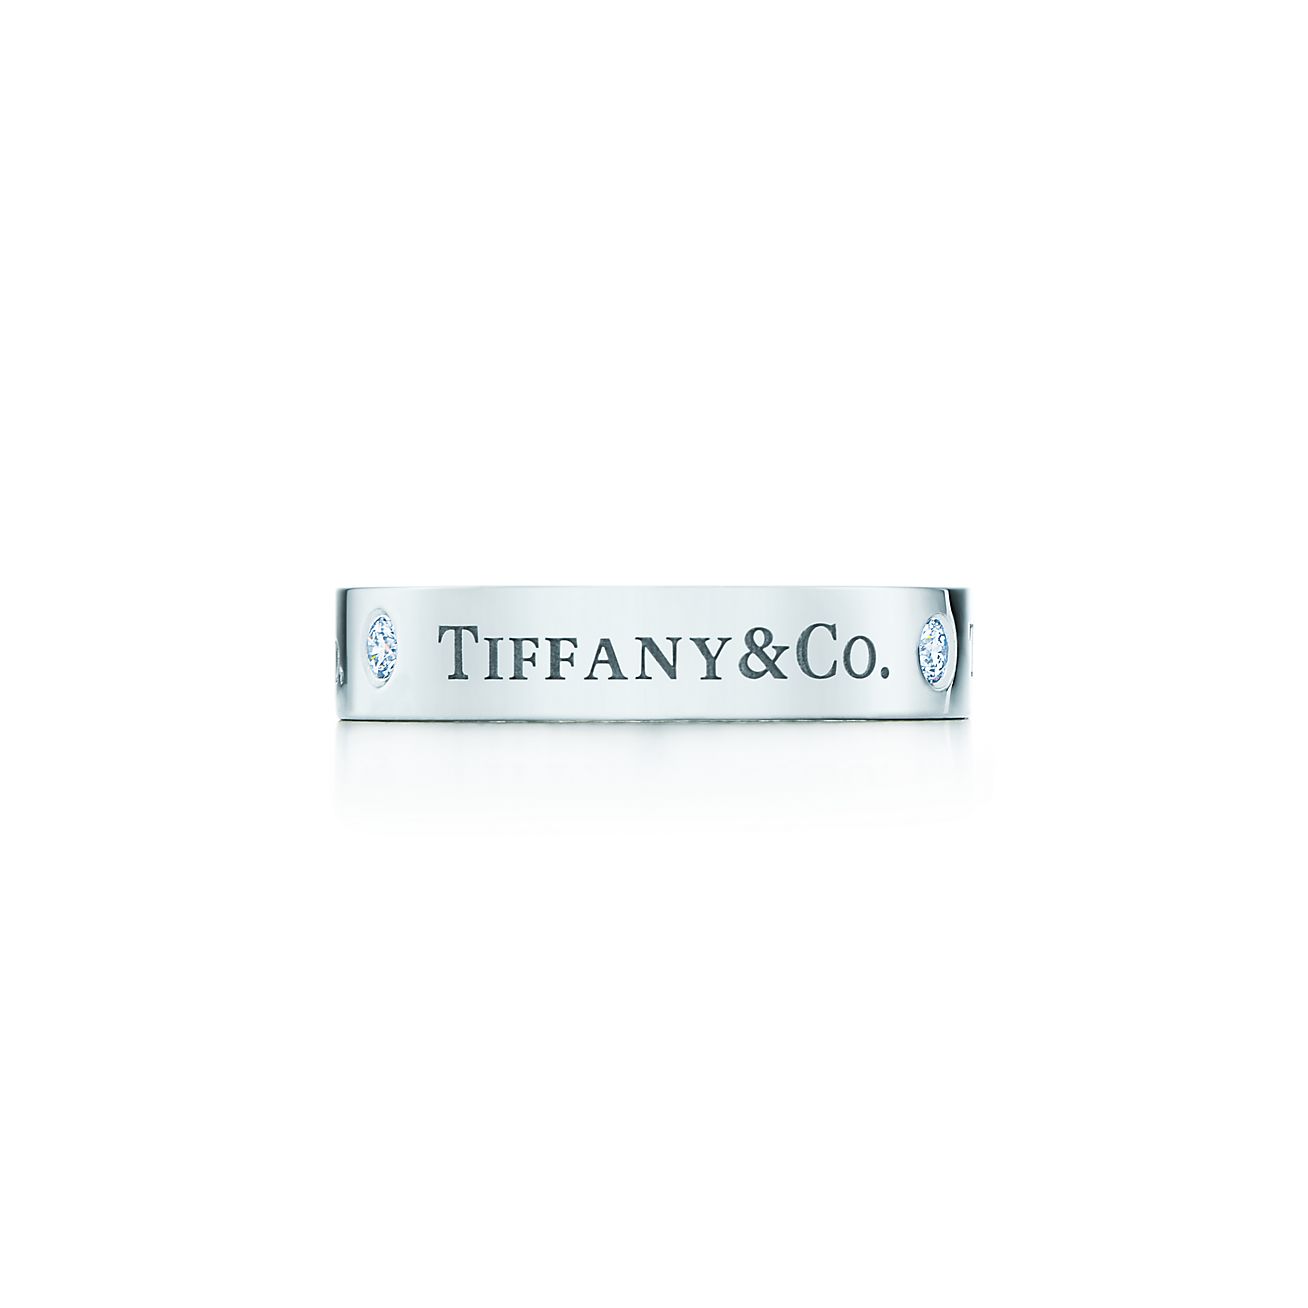 tiffany & co contact